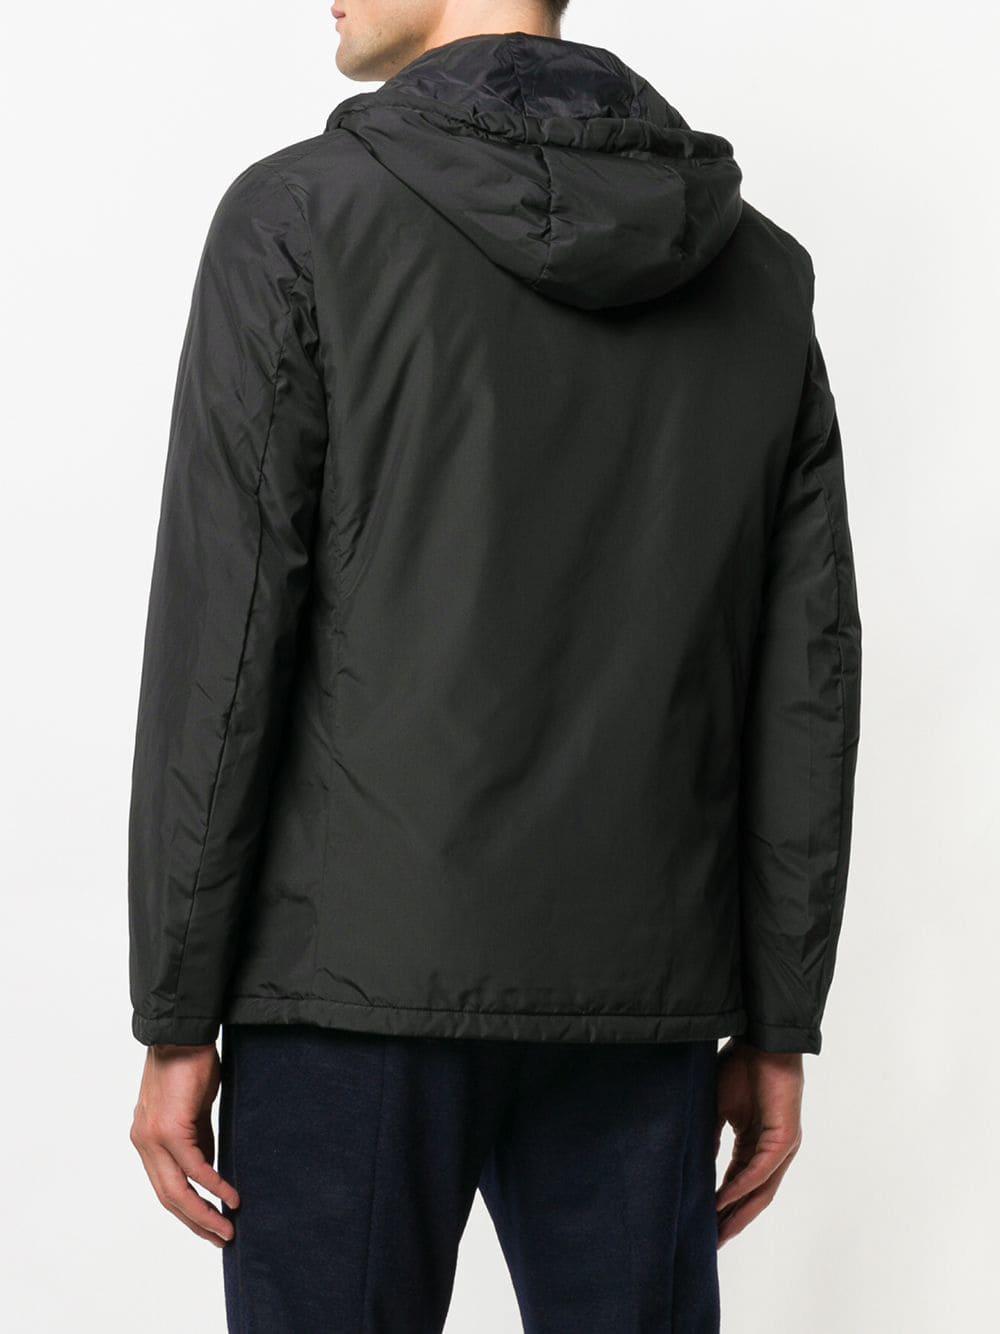 Armani Waterproof Blazer-shaped Jacket in Black for Men | Lyst